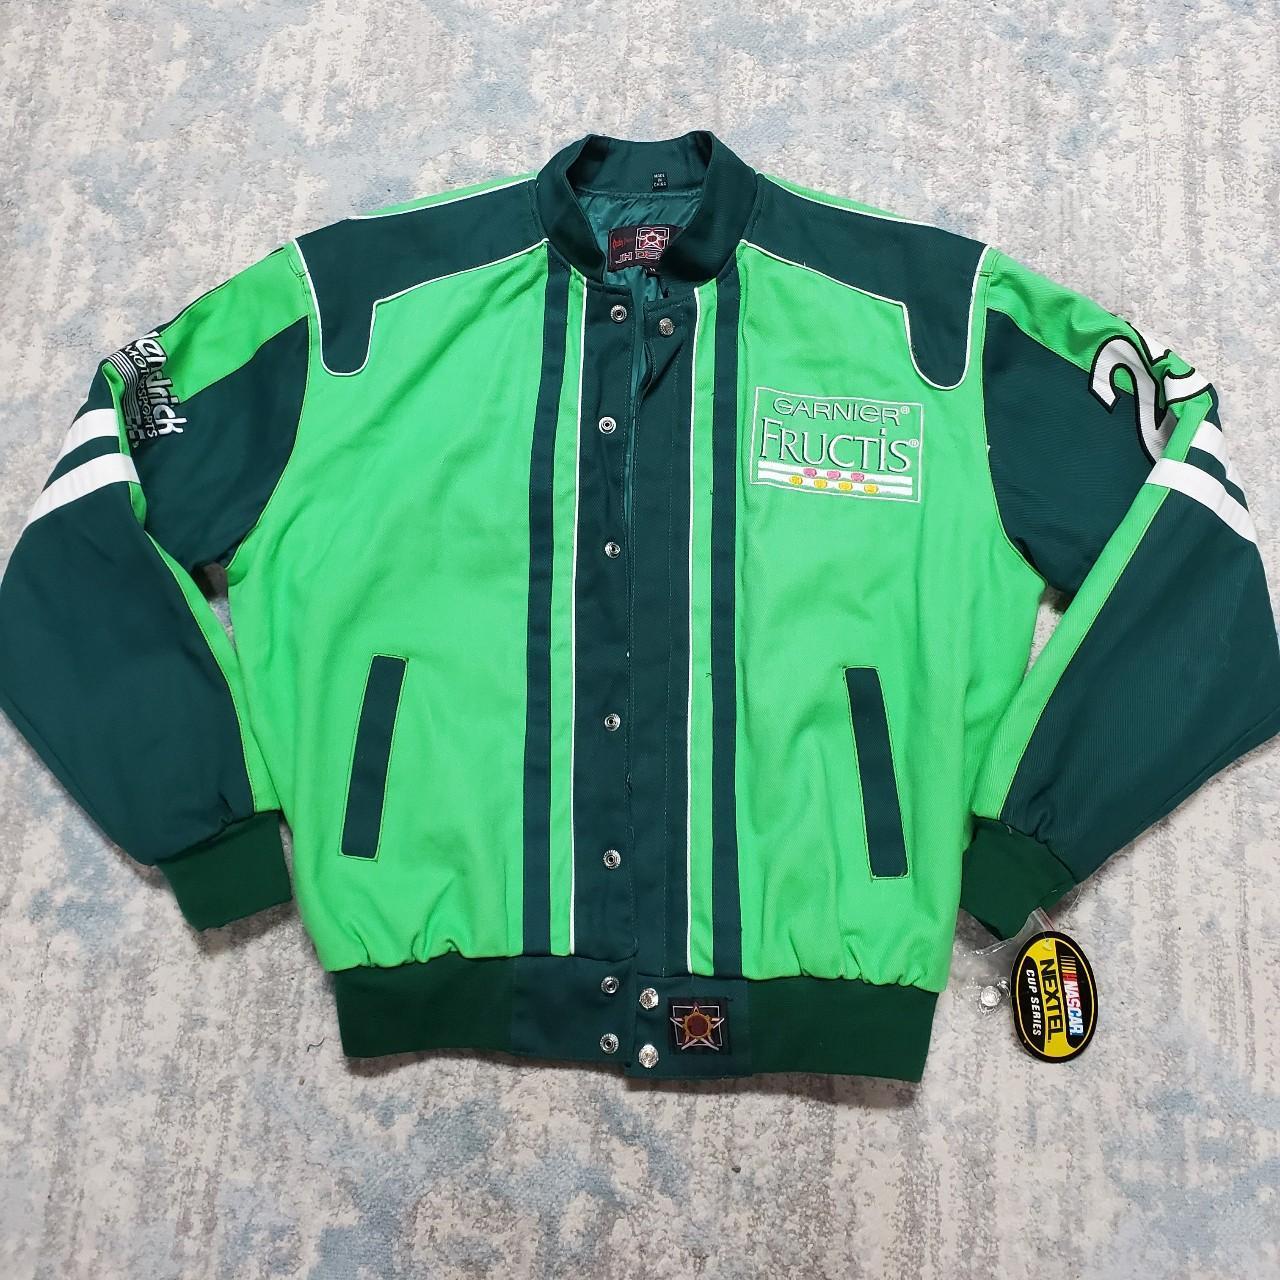 Vintage Nascar jacket JH design Super Rare Size... - Depop